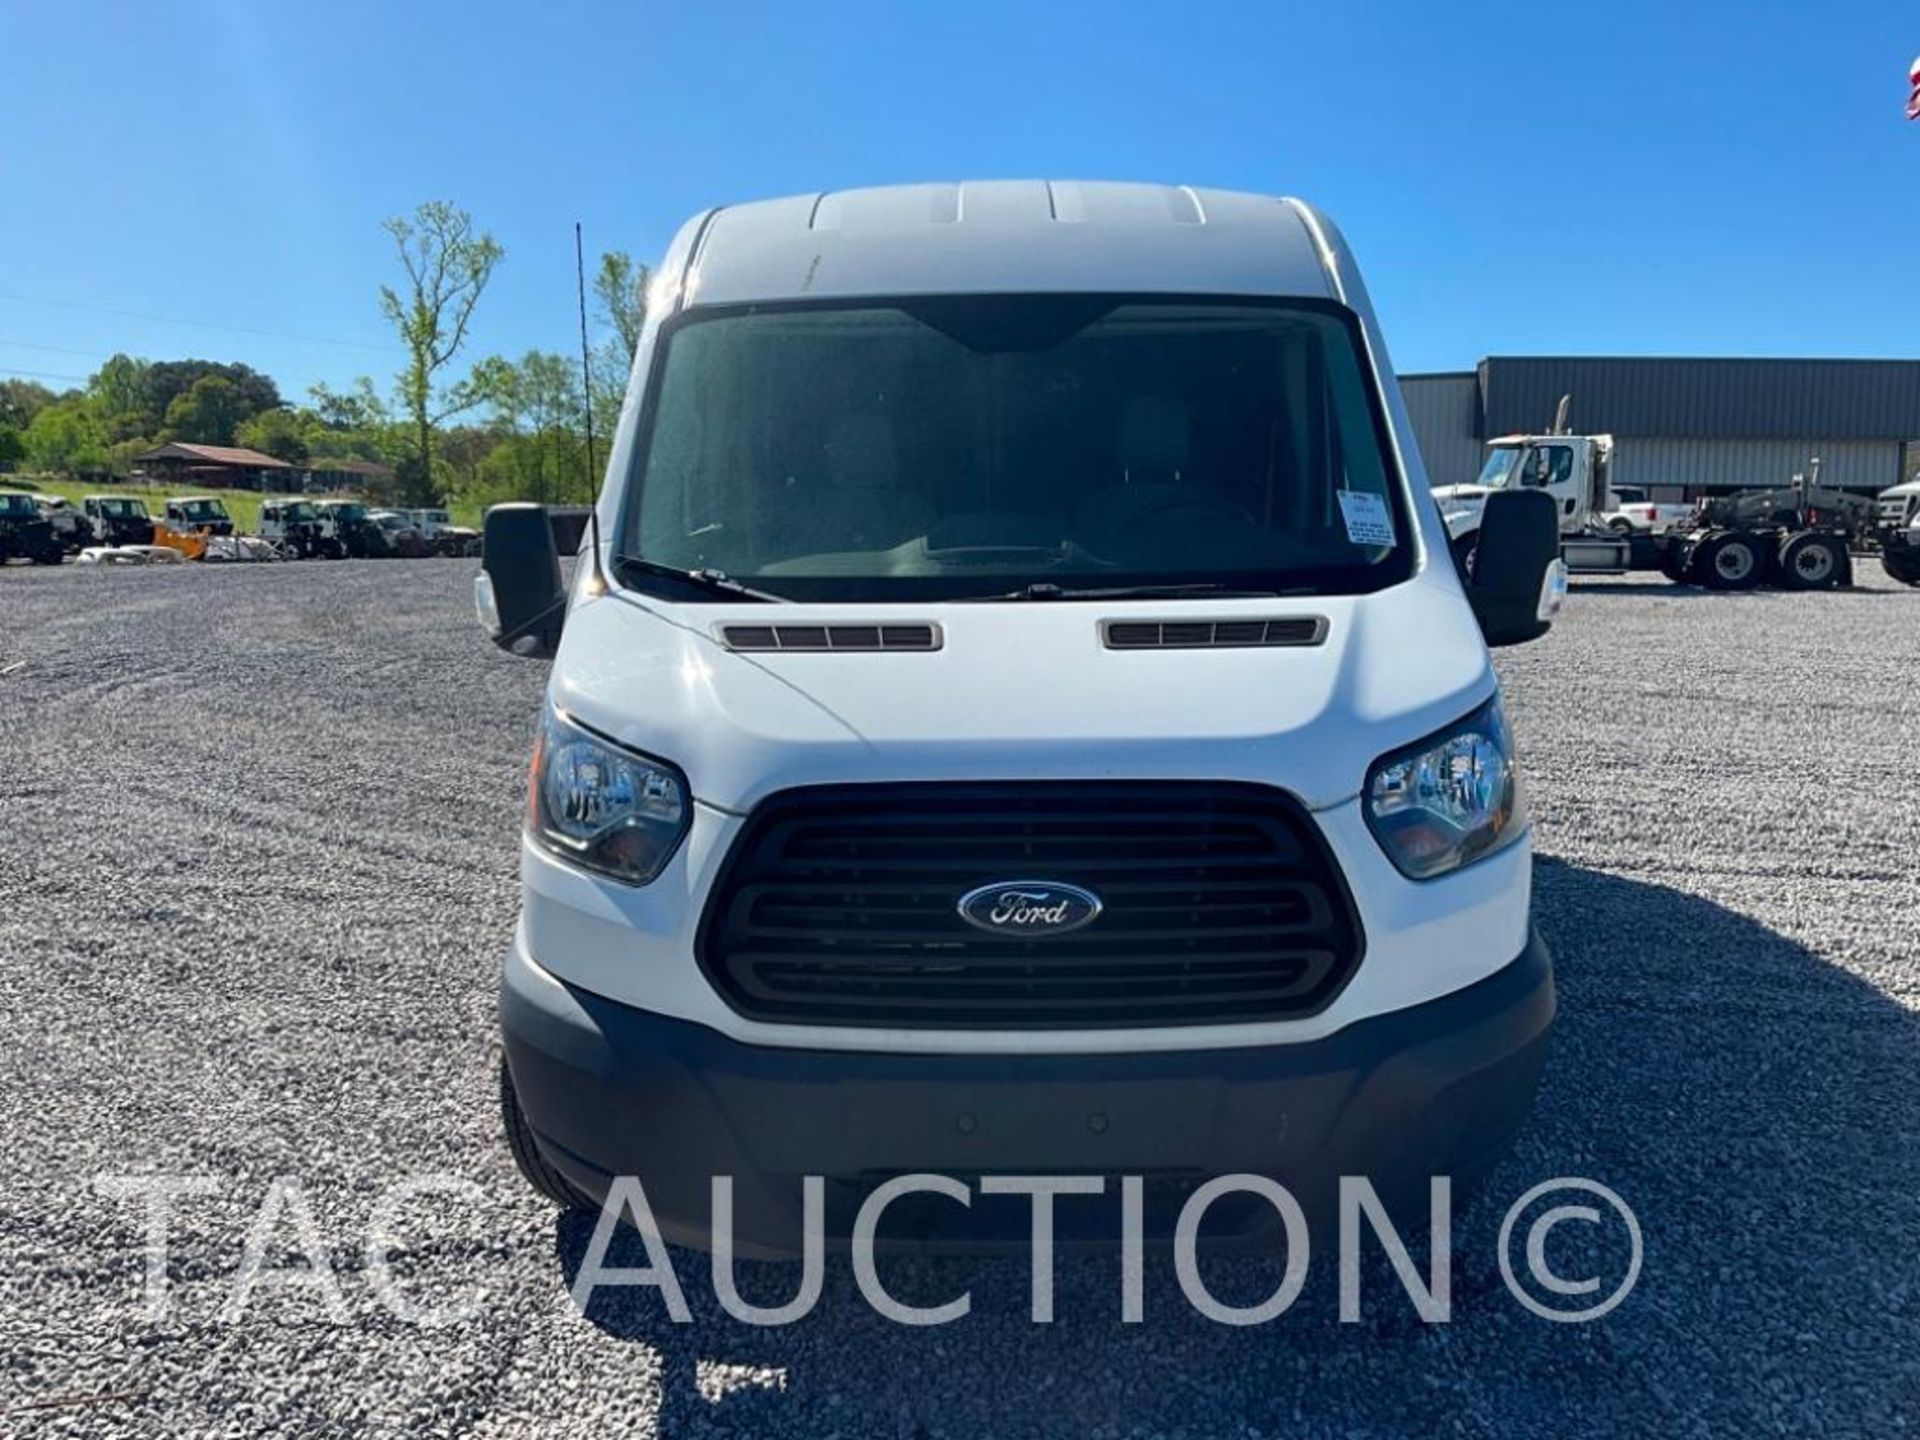 2019 Ford Transit 150 Cargo Van - Image 8 of 52